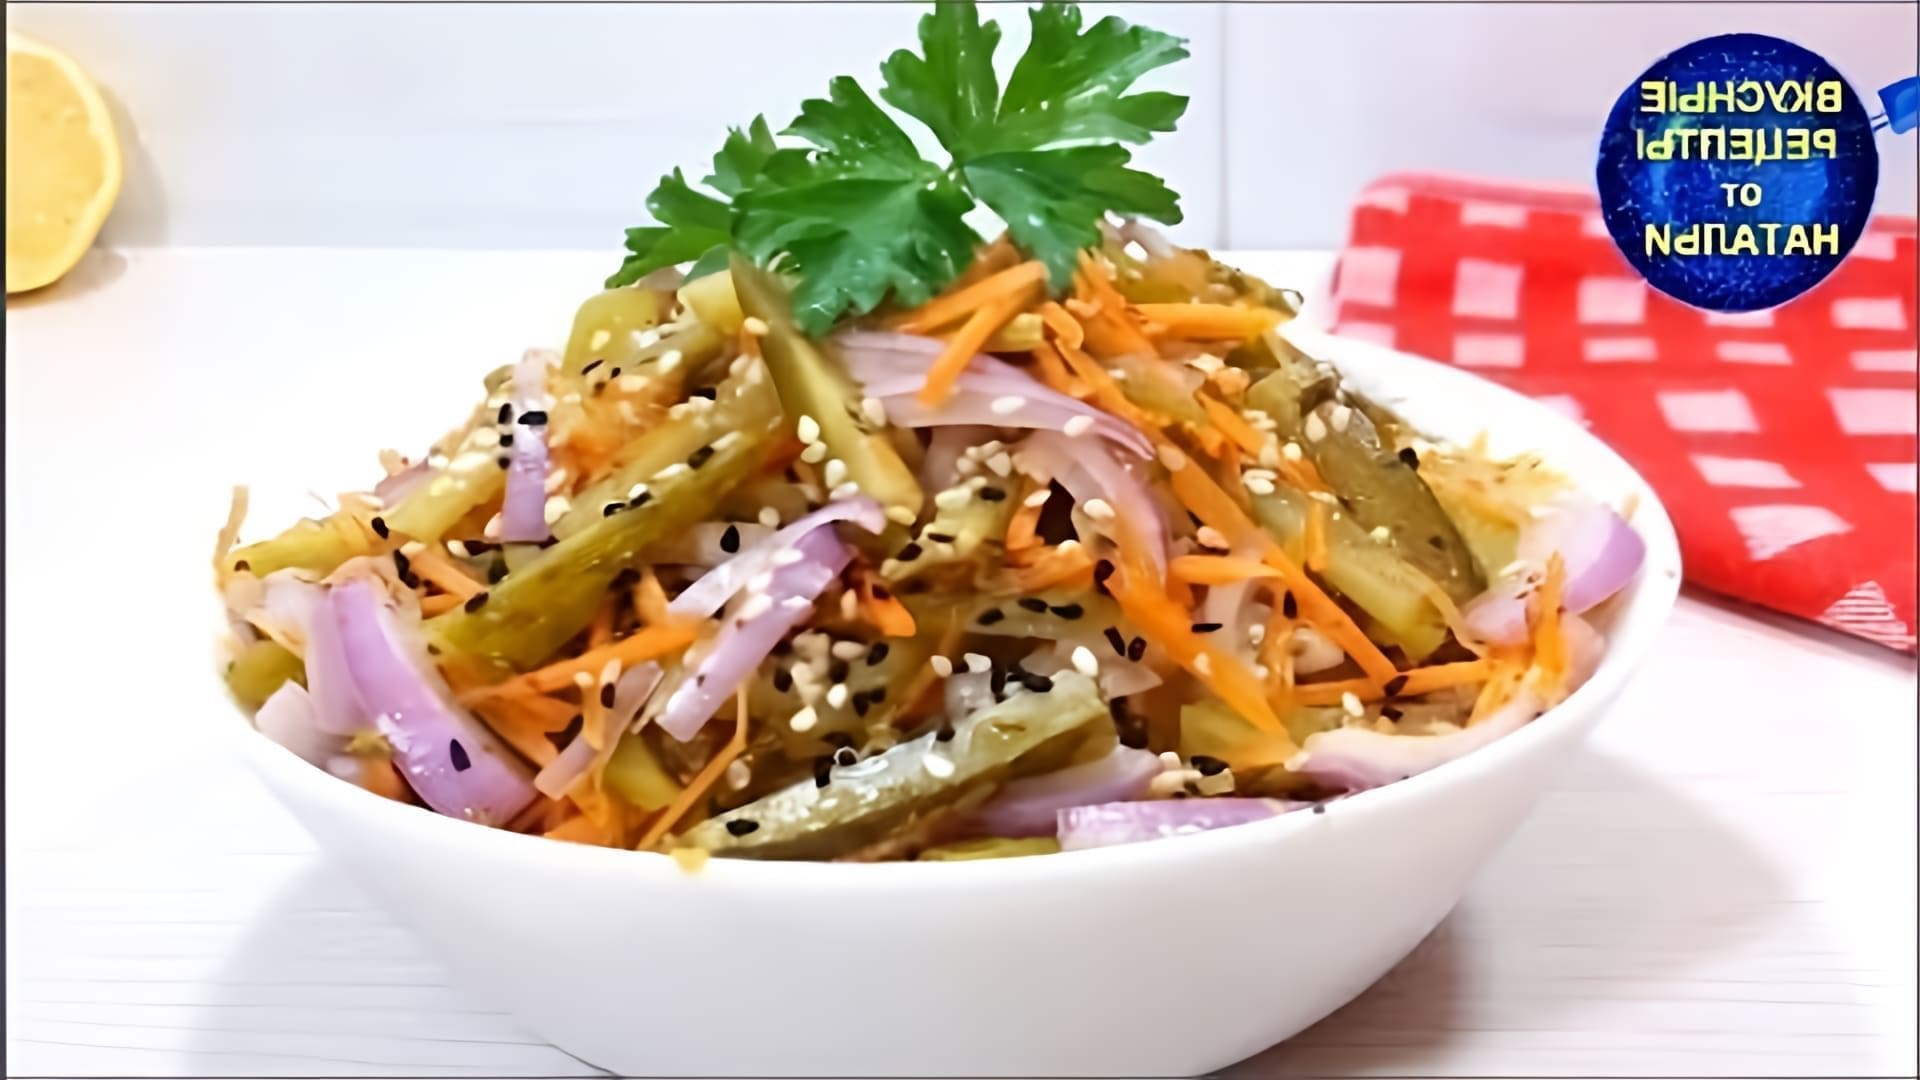 В этом видео демонстрируется рецепт вкусного салата из соленых огурцов без майонеза